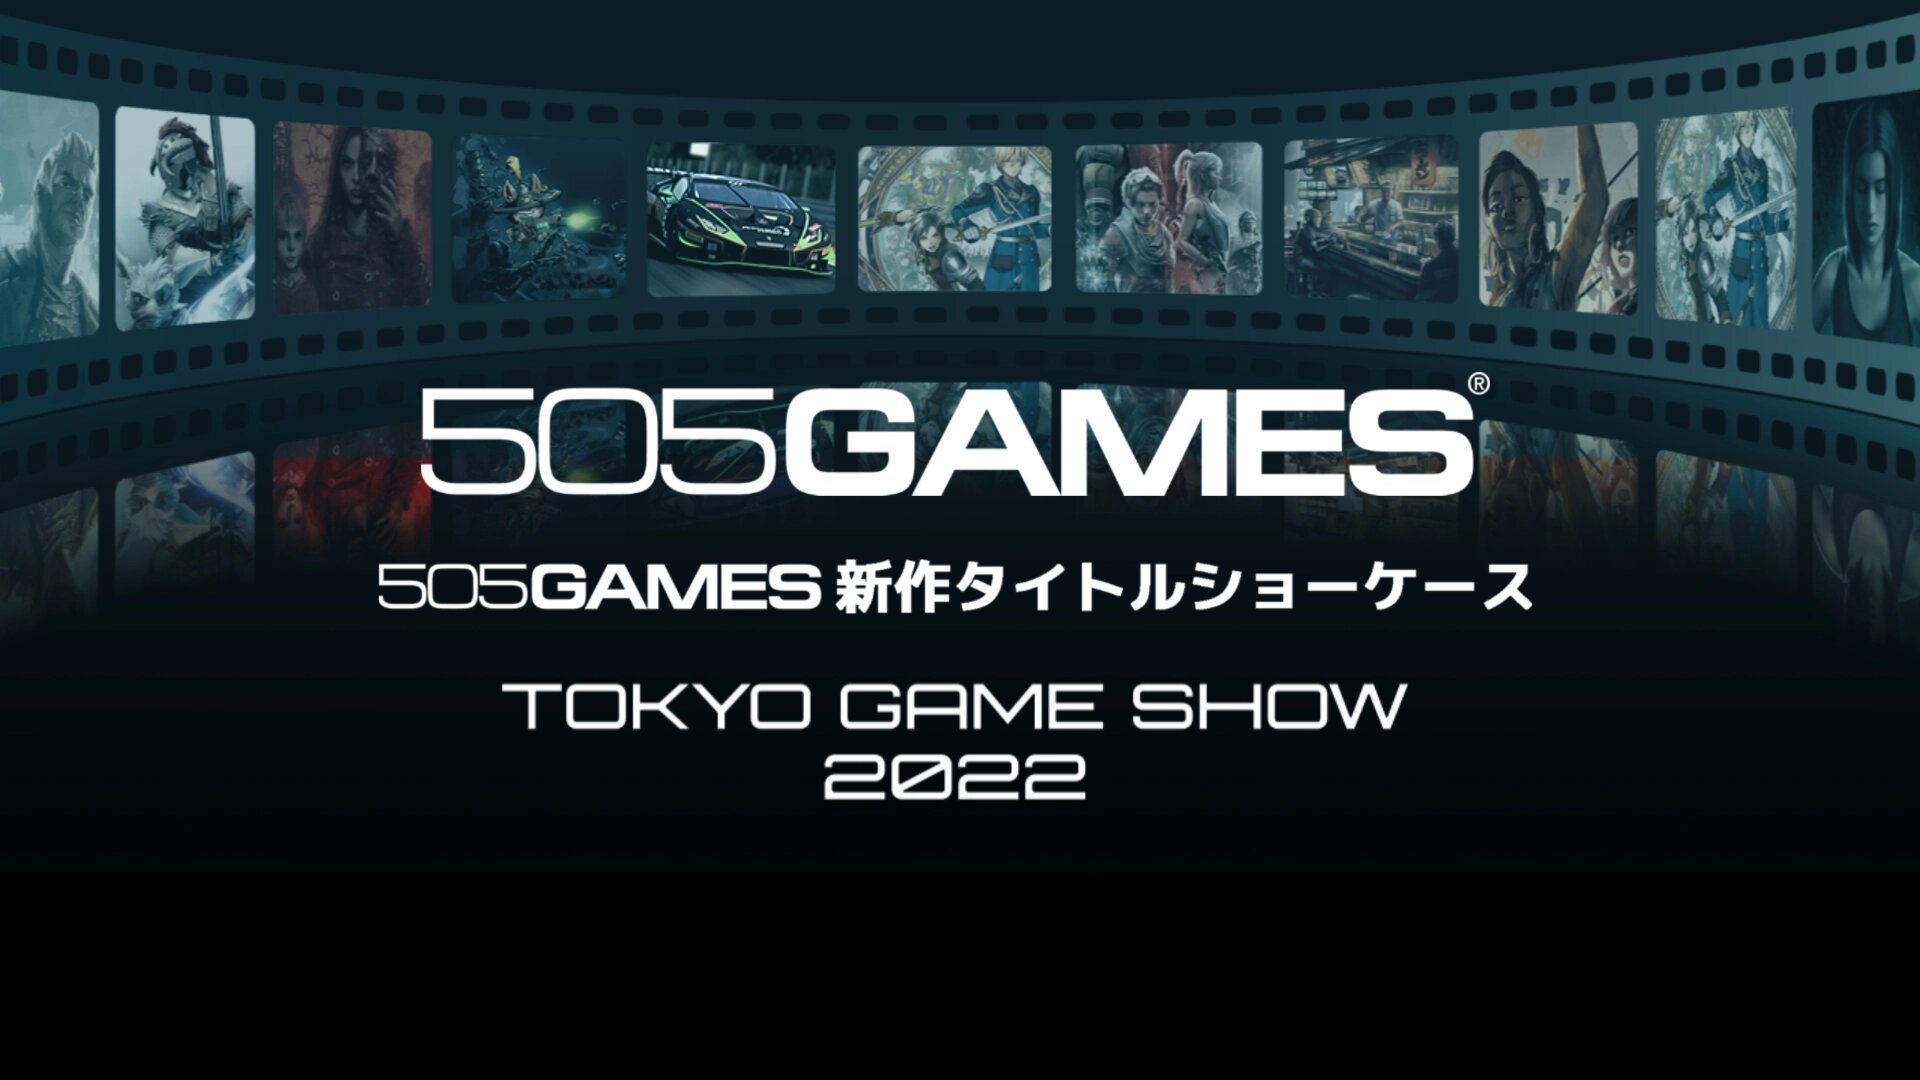 Tokyo Game Show 2022 : le résumé du 505 Games Digital Showcase